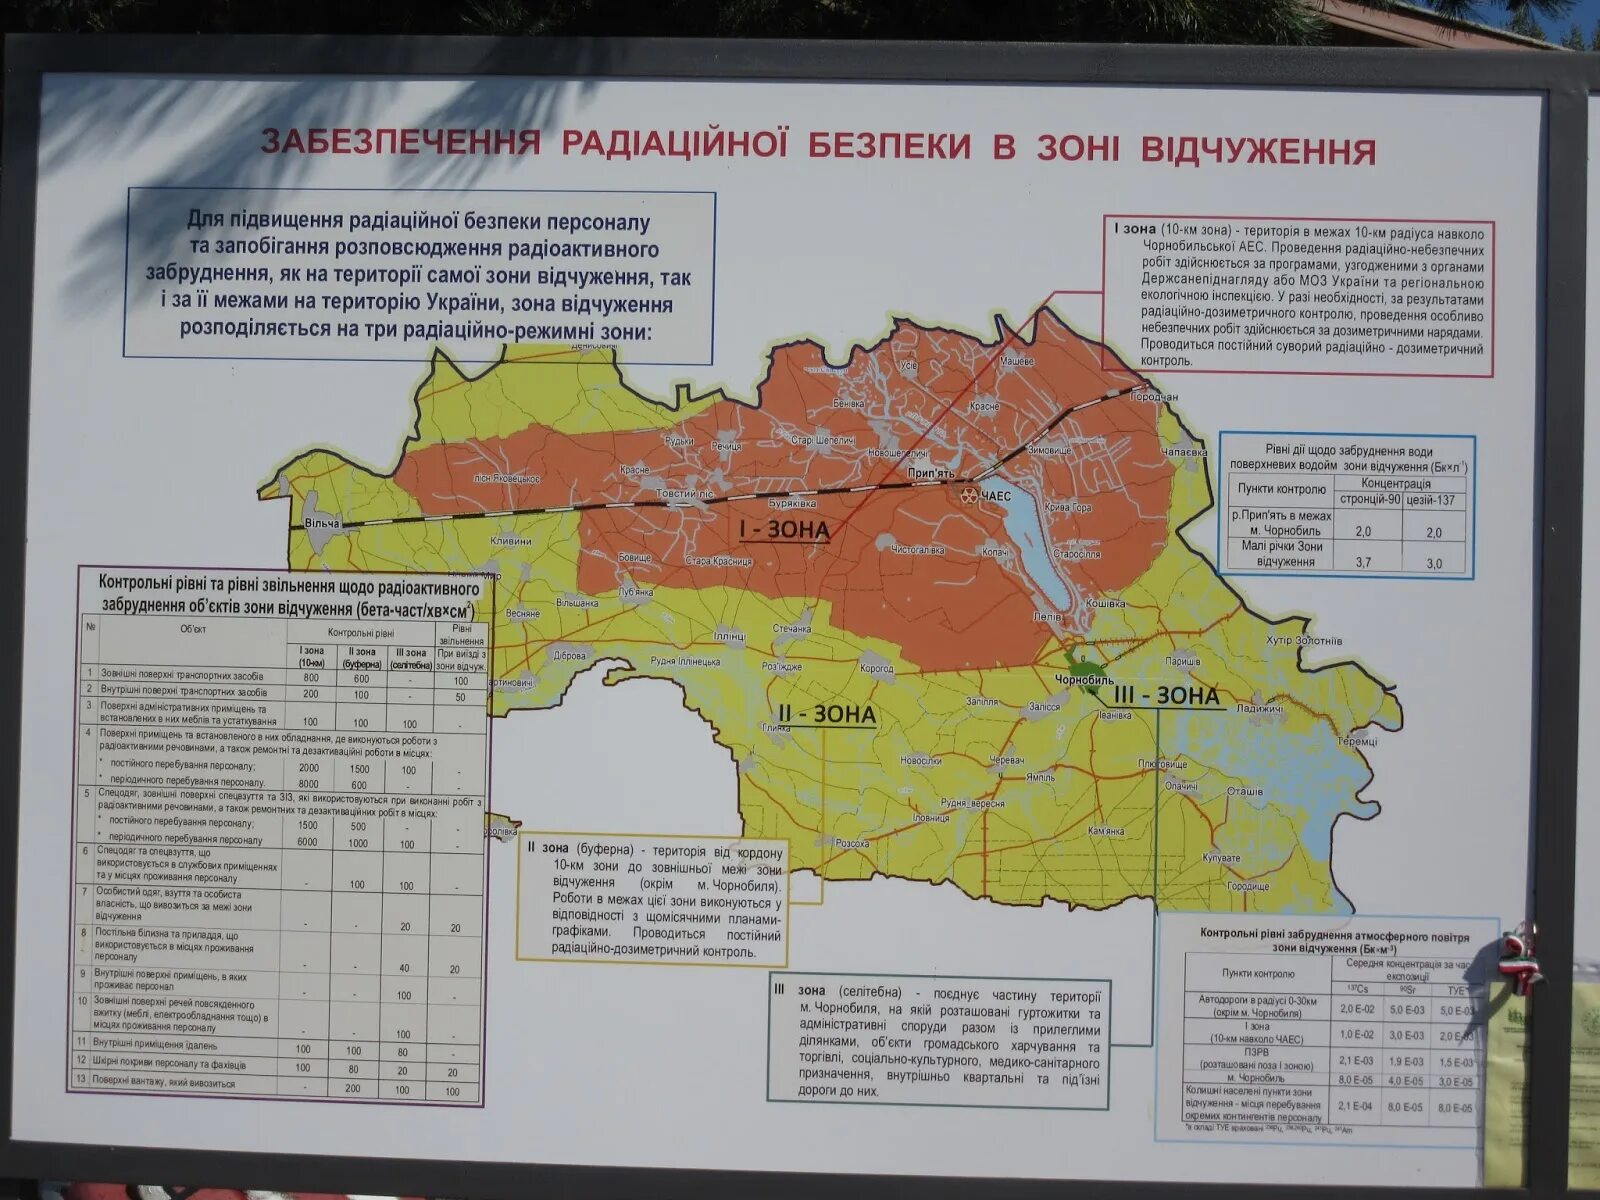 10 Километровая зона Чернобыль. Территория зоны отчуждения Чернобыльской АЭС. Территория отчуждения Чернобыльской АЭС на карте. Зона отчуждения Чернобыльской АЭС на карте Беларуси.